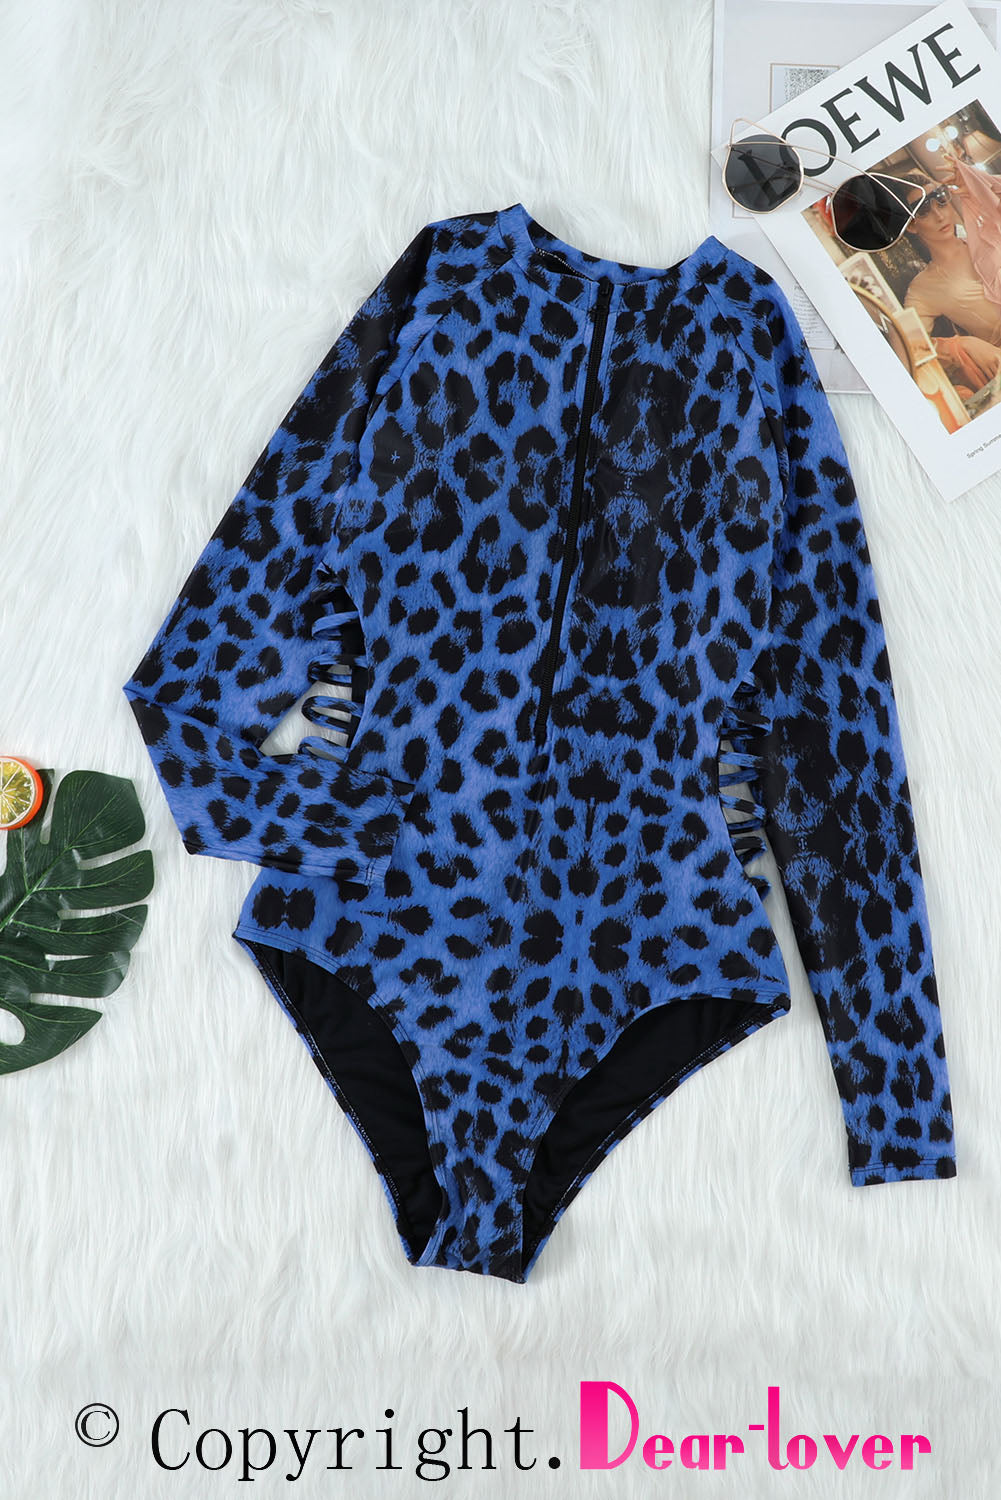 Blauer Rashguard-Badeanzug mit Leopardenmuster und Reißverschlussausschnitt